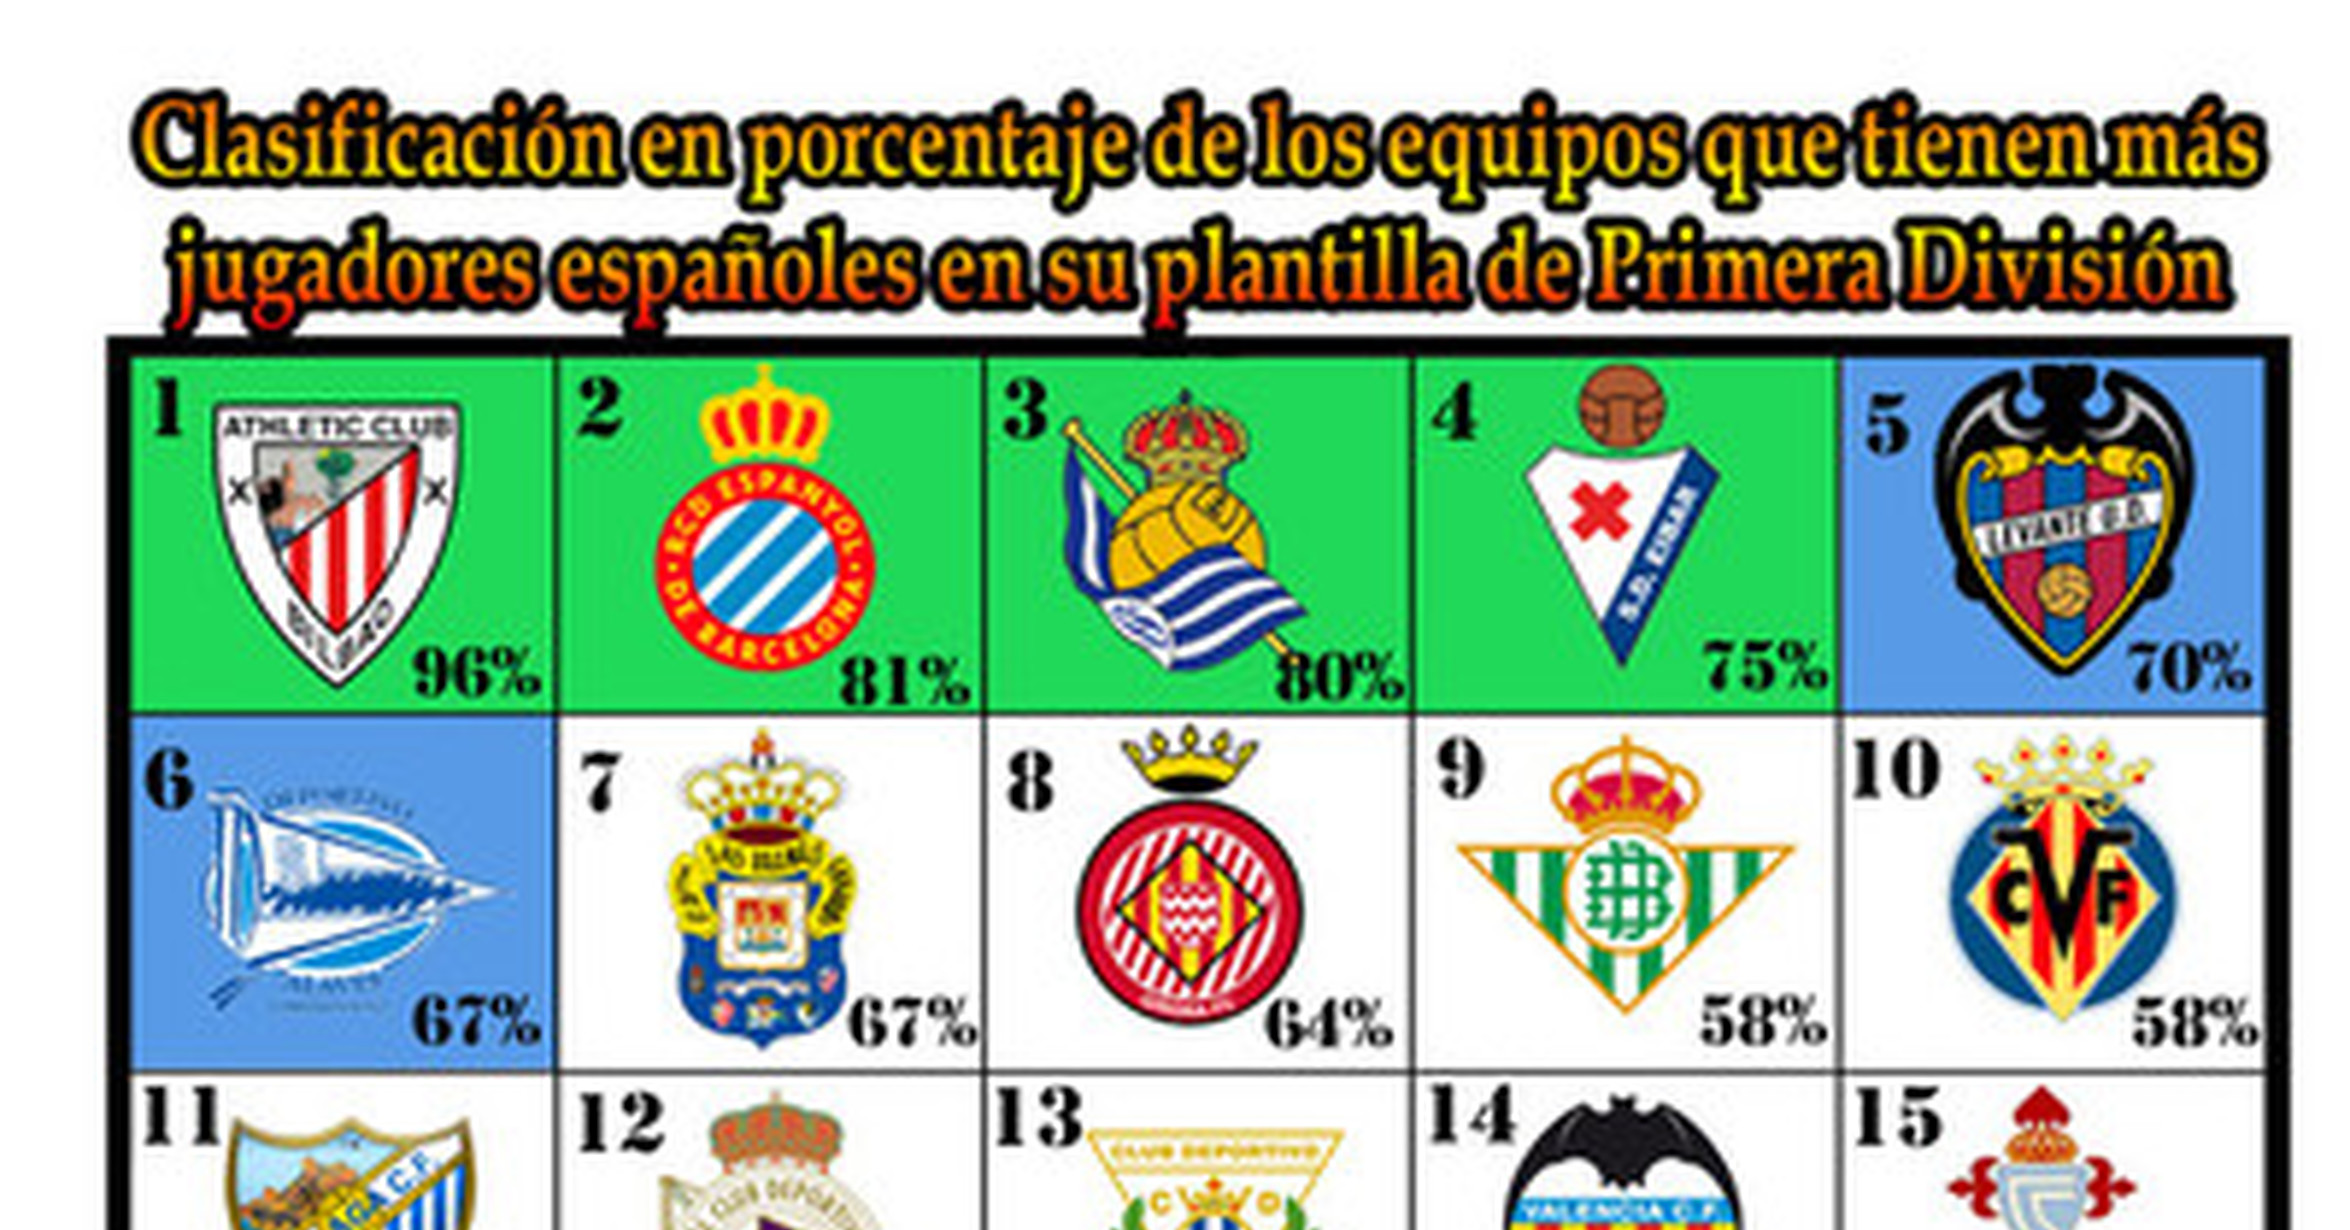 Clasificación en porcentaje de españoles en los equipos Primera División